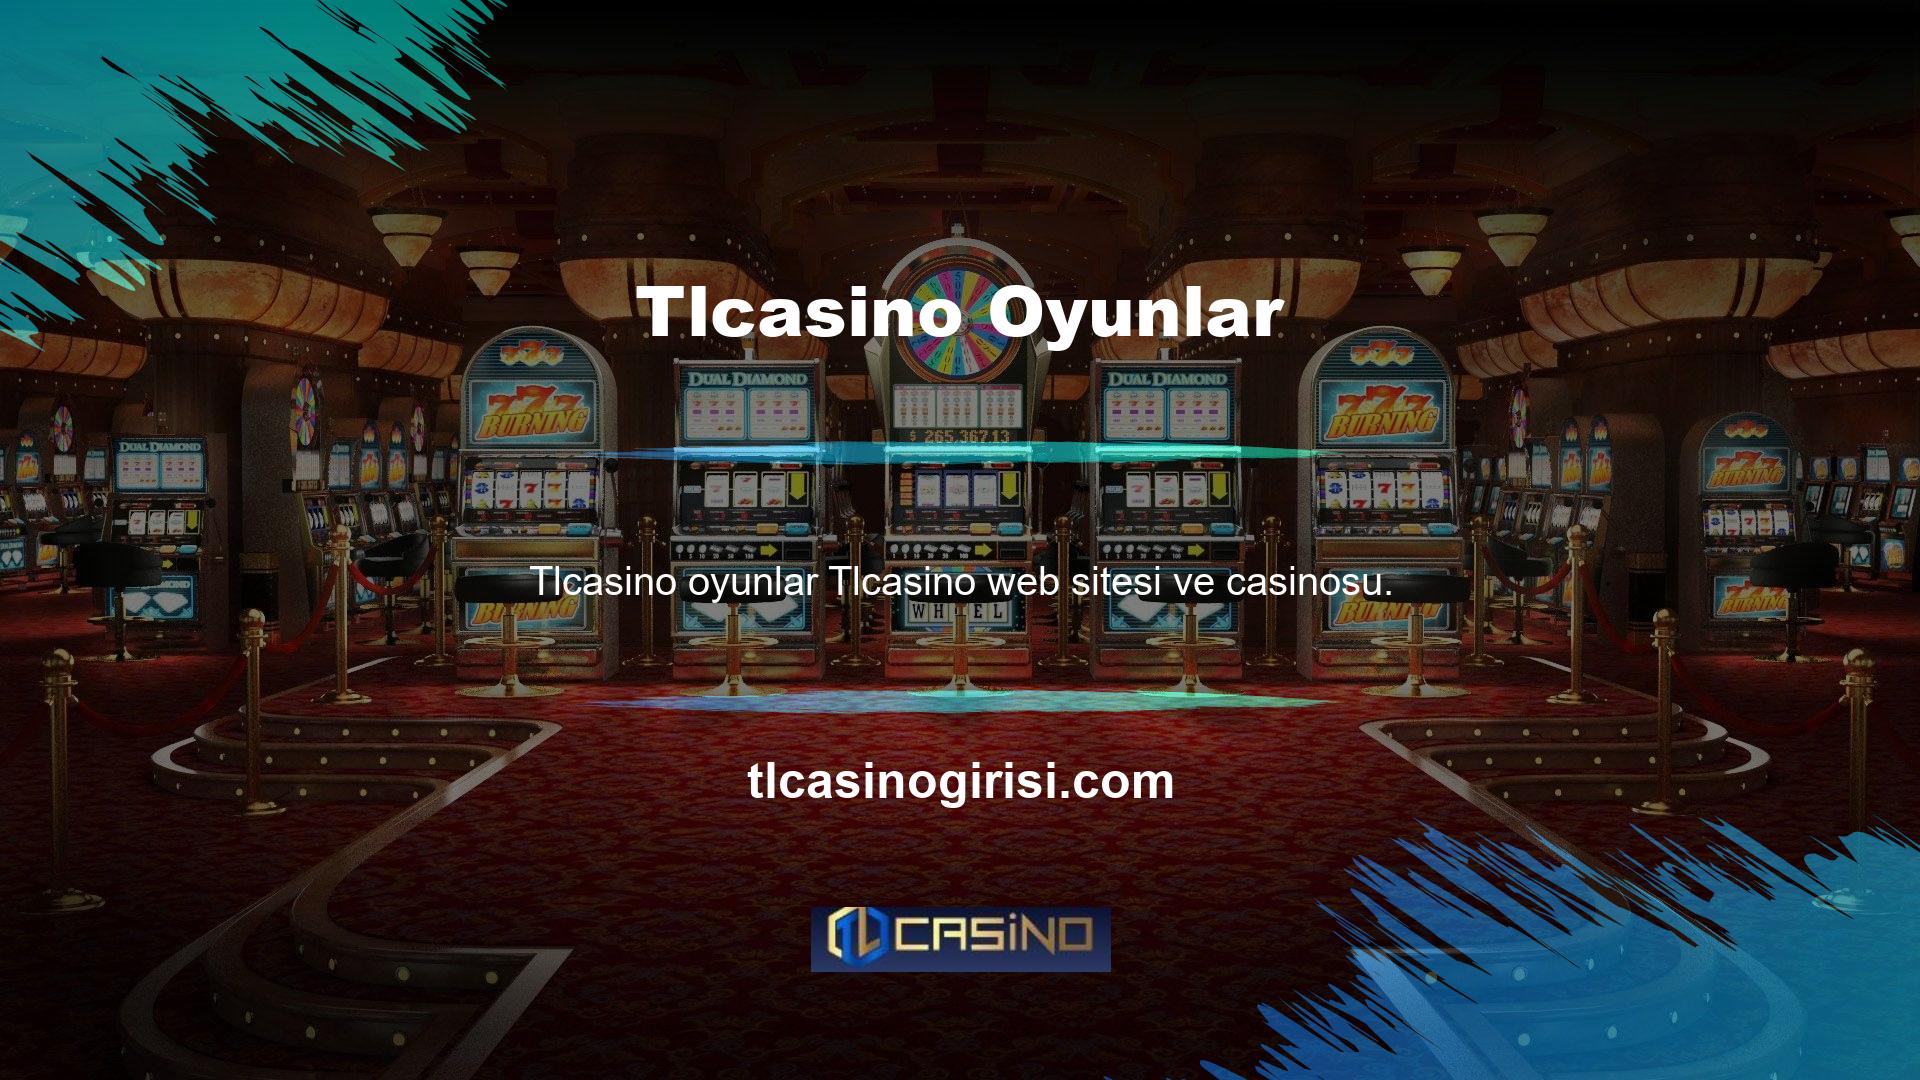 Tlcasino bahis sitesinin oyunlar bölümü “Bahisler, Casino, Slotlar” ve Poker gibi oyunlardan oluşmaktadır